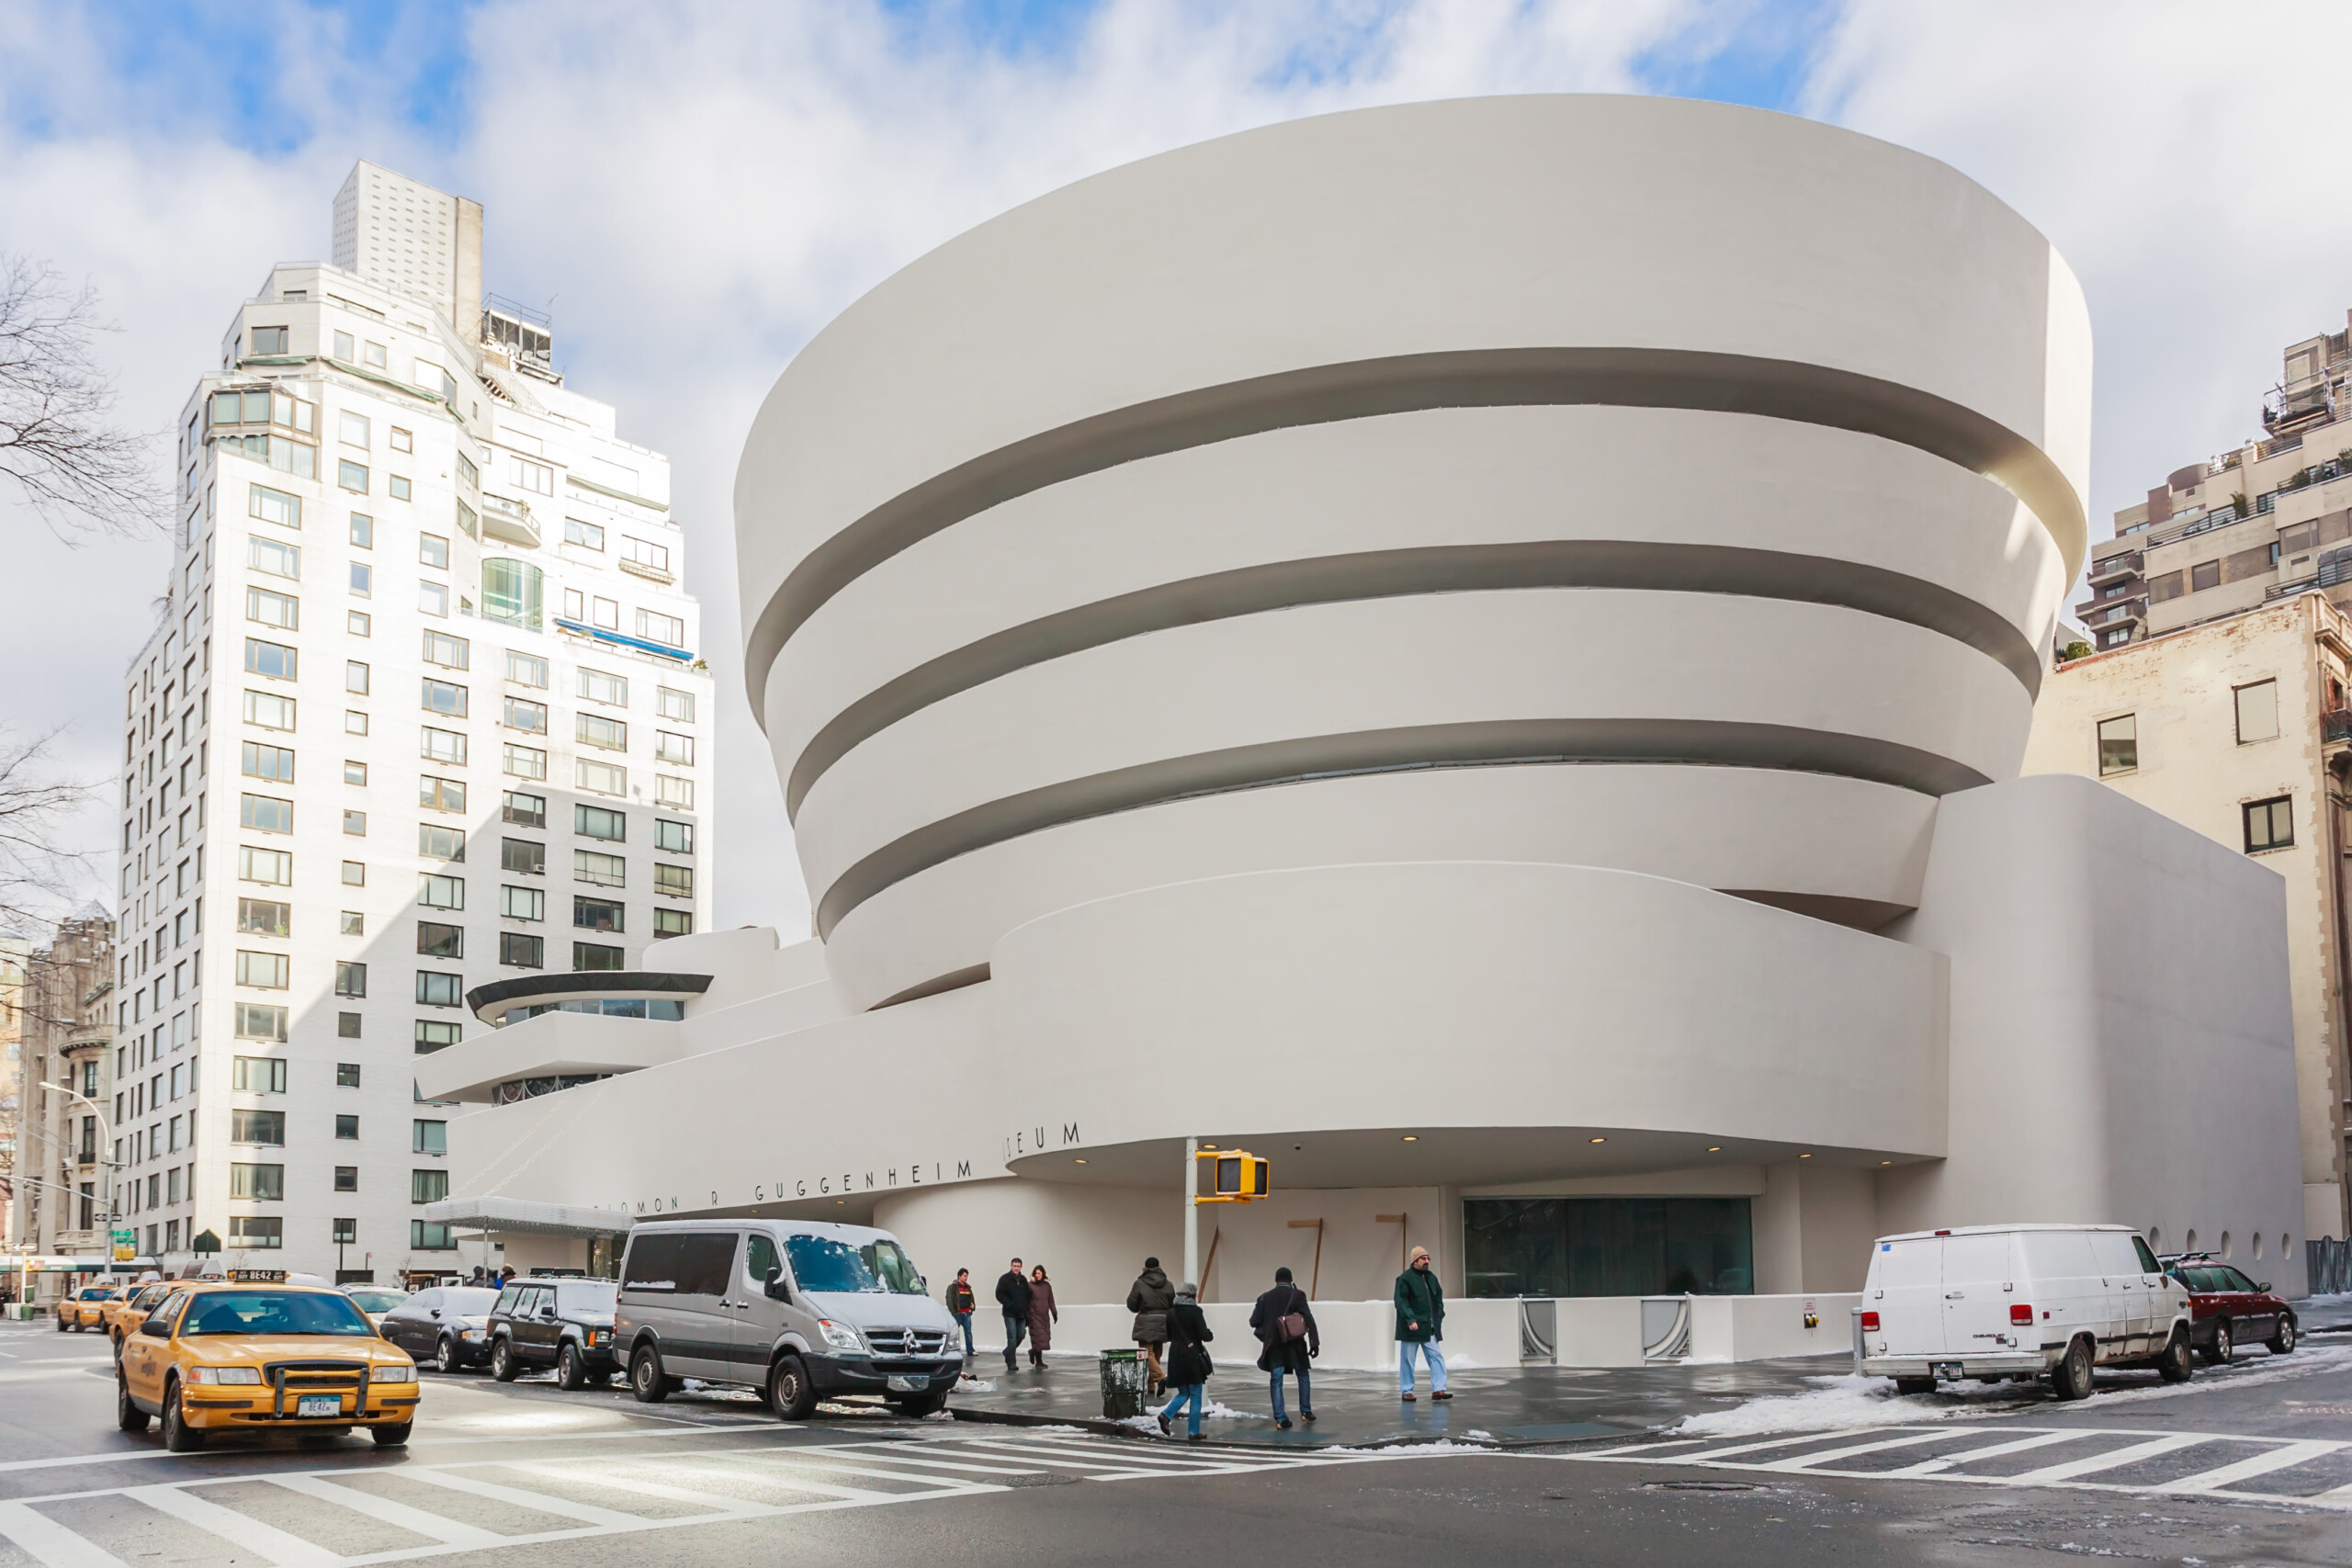 Muzeum sztuki nowoczesnej i współczesnej Solomona R. Guggenheima. Zaprojektowany przez Franka Lloyda Wrighta 11 stycznia 2009 roku w Nowym Jorku, USA, licencja: shutterstock/By Tinnaporn Sathapornnanont